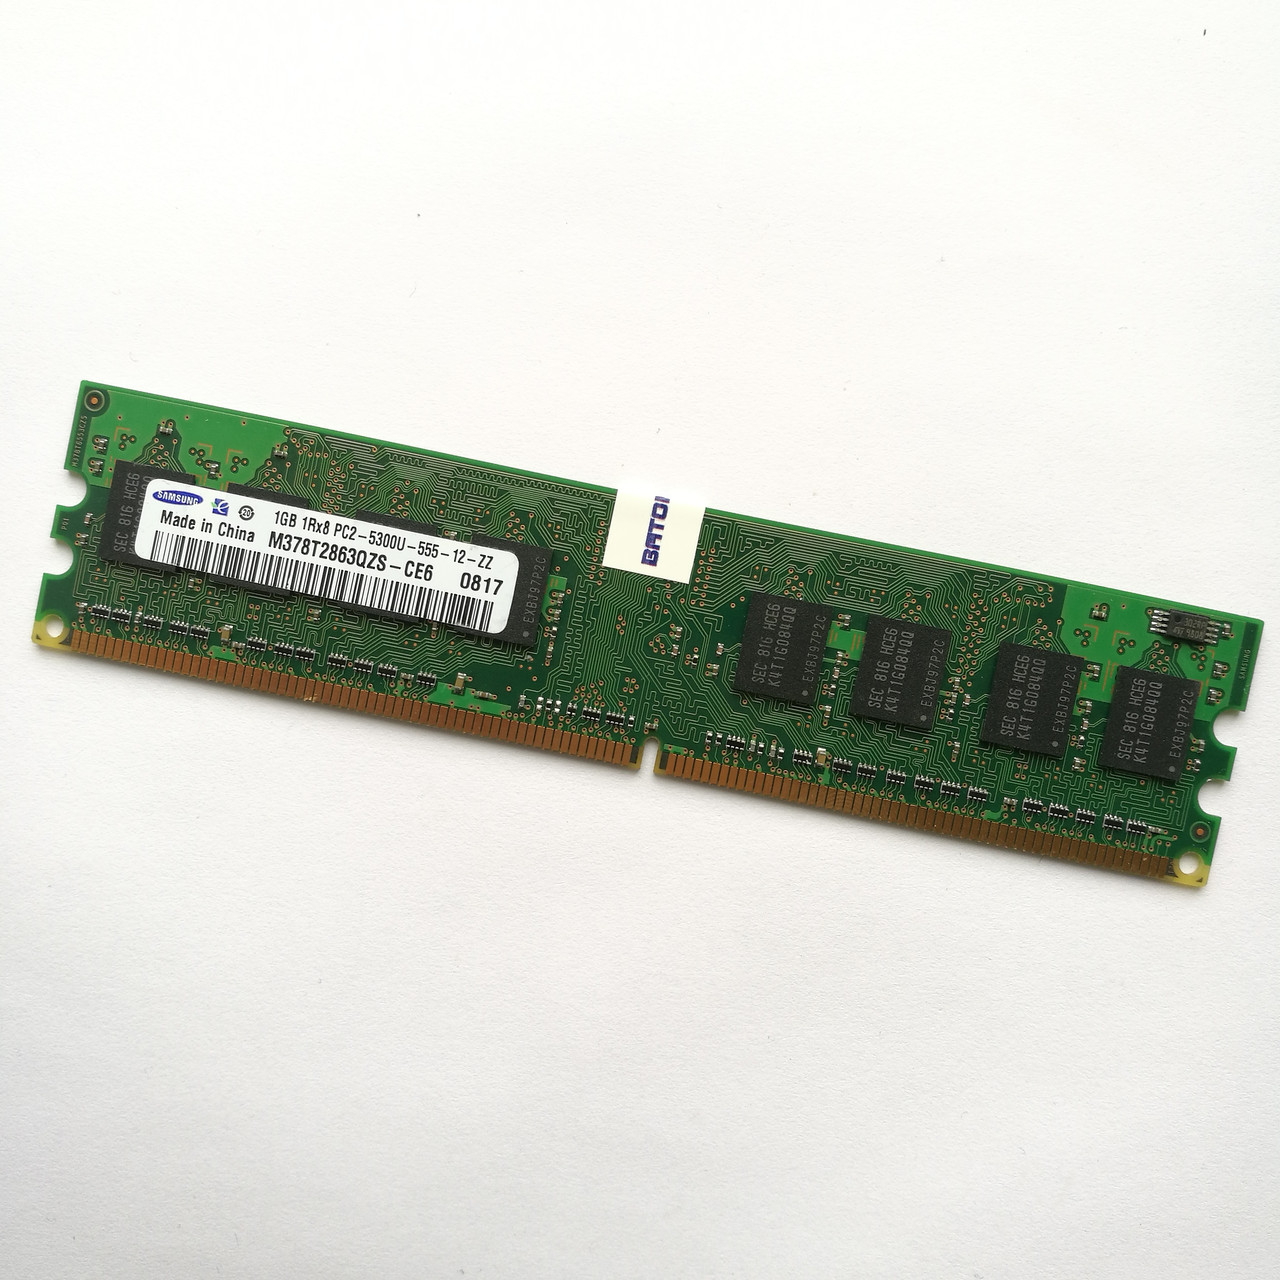 Оперативная память Samsung DDR2 1Gb 667MHz PC2 5300U 1R8 CL5 (M378T2863QZS-CE6) Б/У